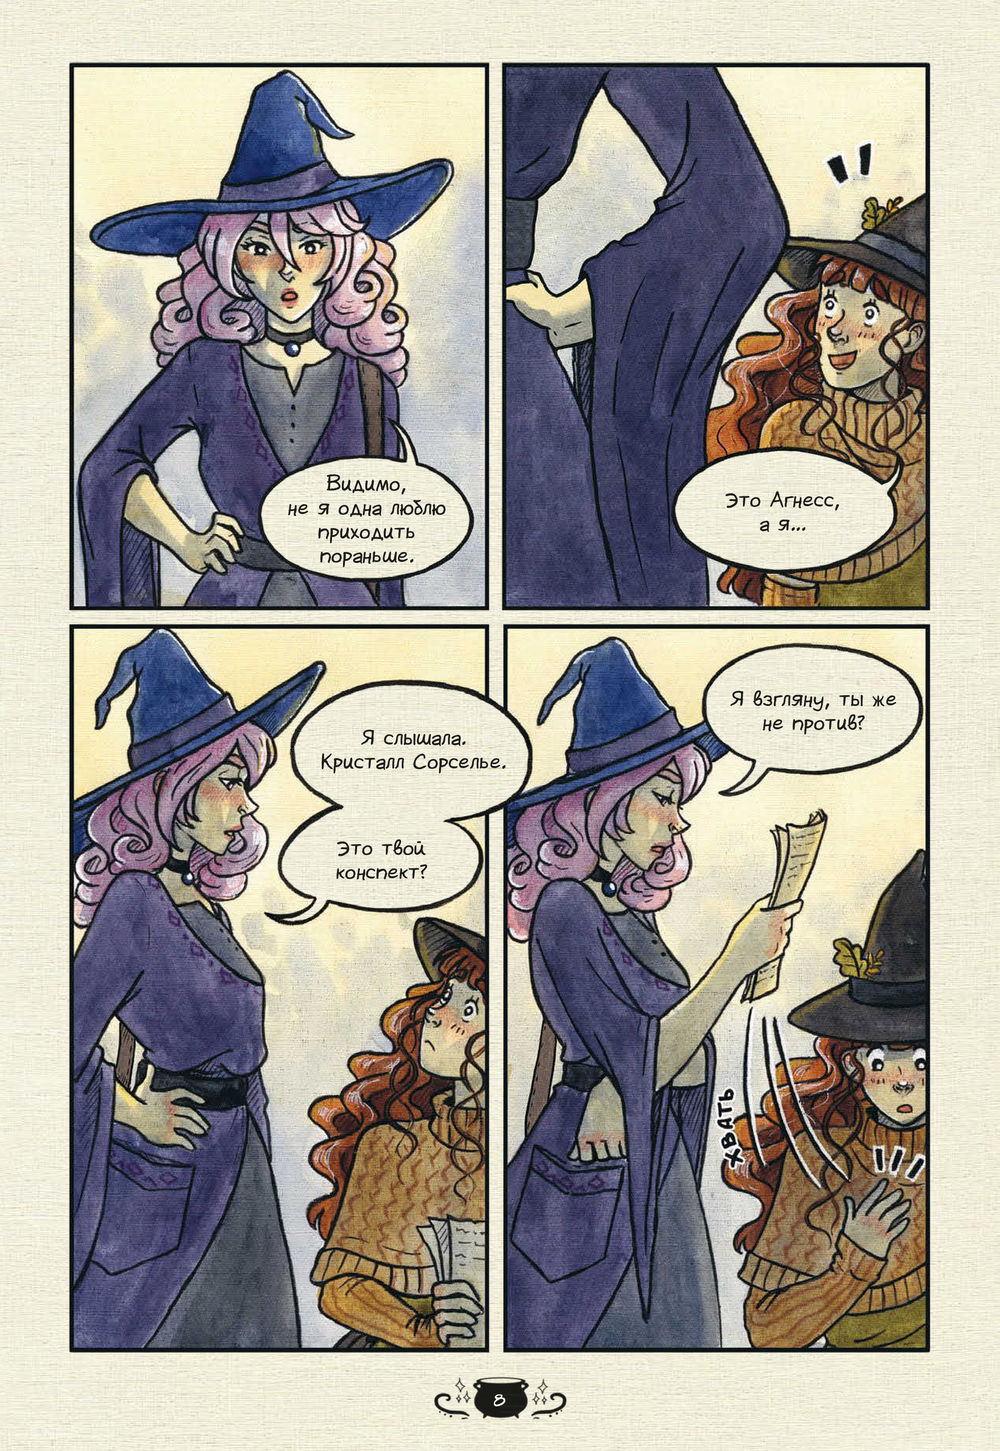 Хэллоуин: как грамотно похоронить ведьму